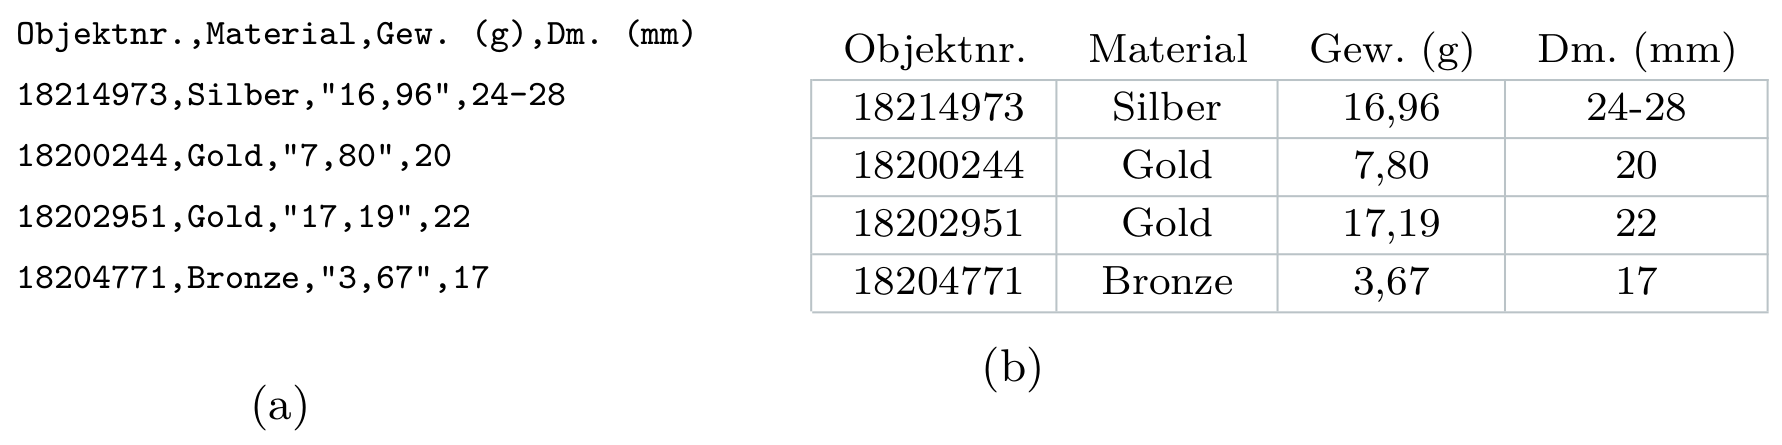 (a) Eine CSV-Datei. In der Spalte 'Gew. (g)' sind die Werte jeweils mit Textbegrenzungszeichen ('') versehen, da innerhalb des Wertes ein Komma verwendet wird. (b) Die CSV-Datei aus a, wie sie in einem Tabellenkalkulationsprogramm dargestellt werden könnte. Die Tabelle stellt Informationen zu Münzen aus dem Münzkabinett der Staatliche Museen zu Berlin dar.